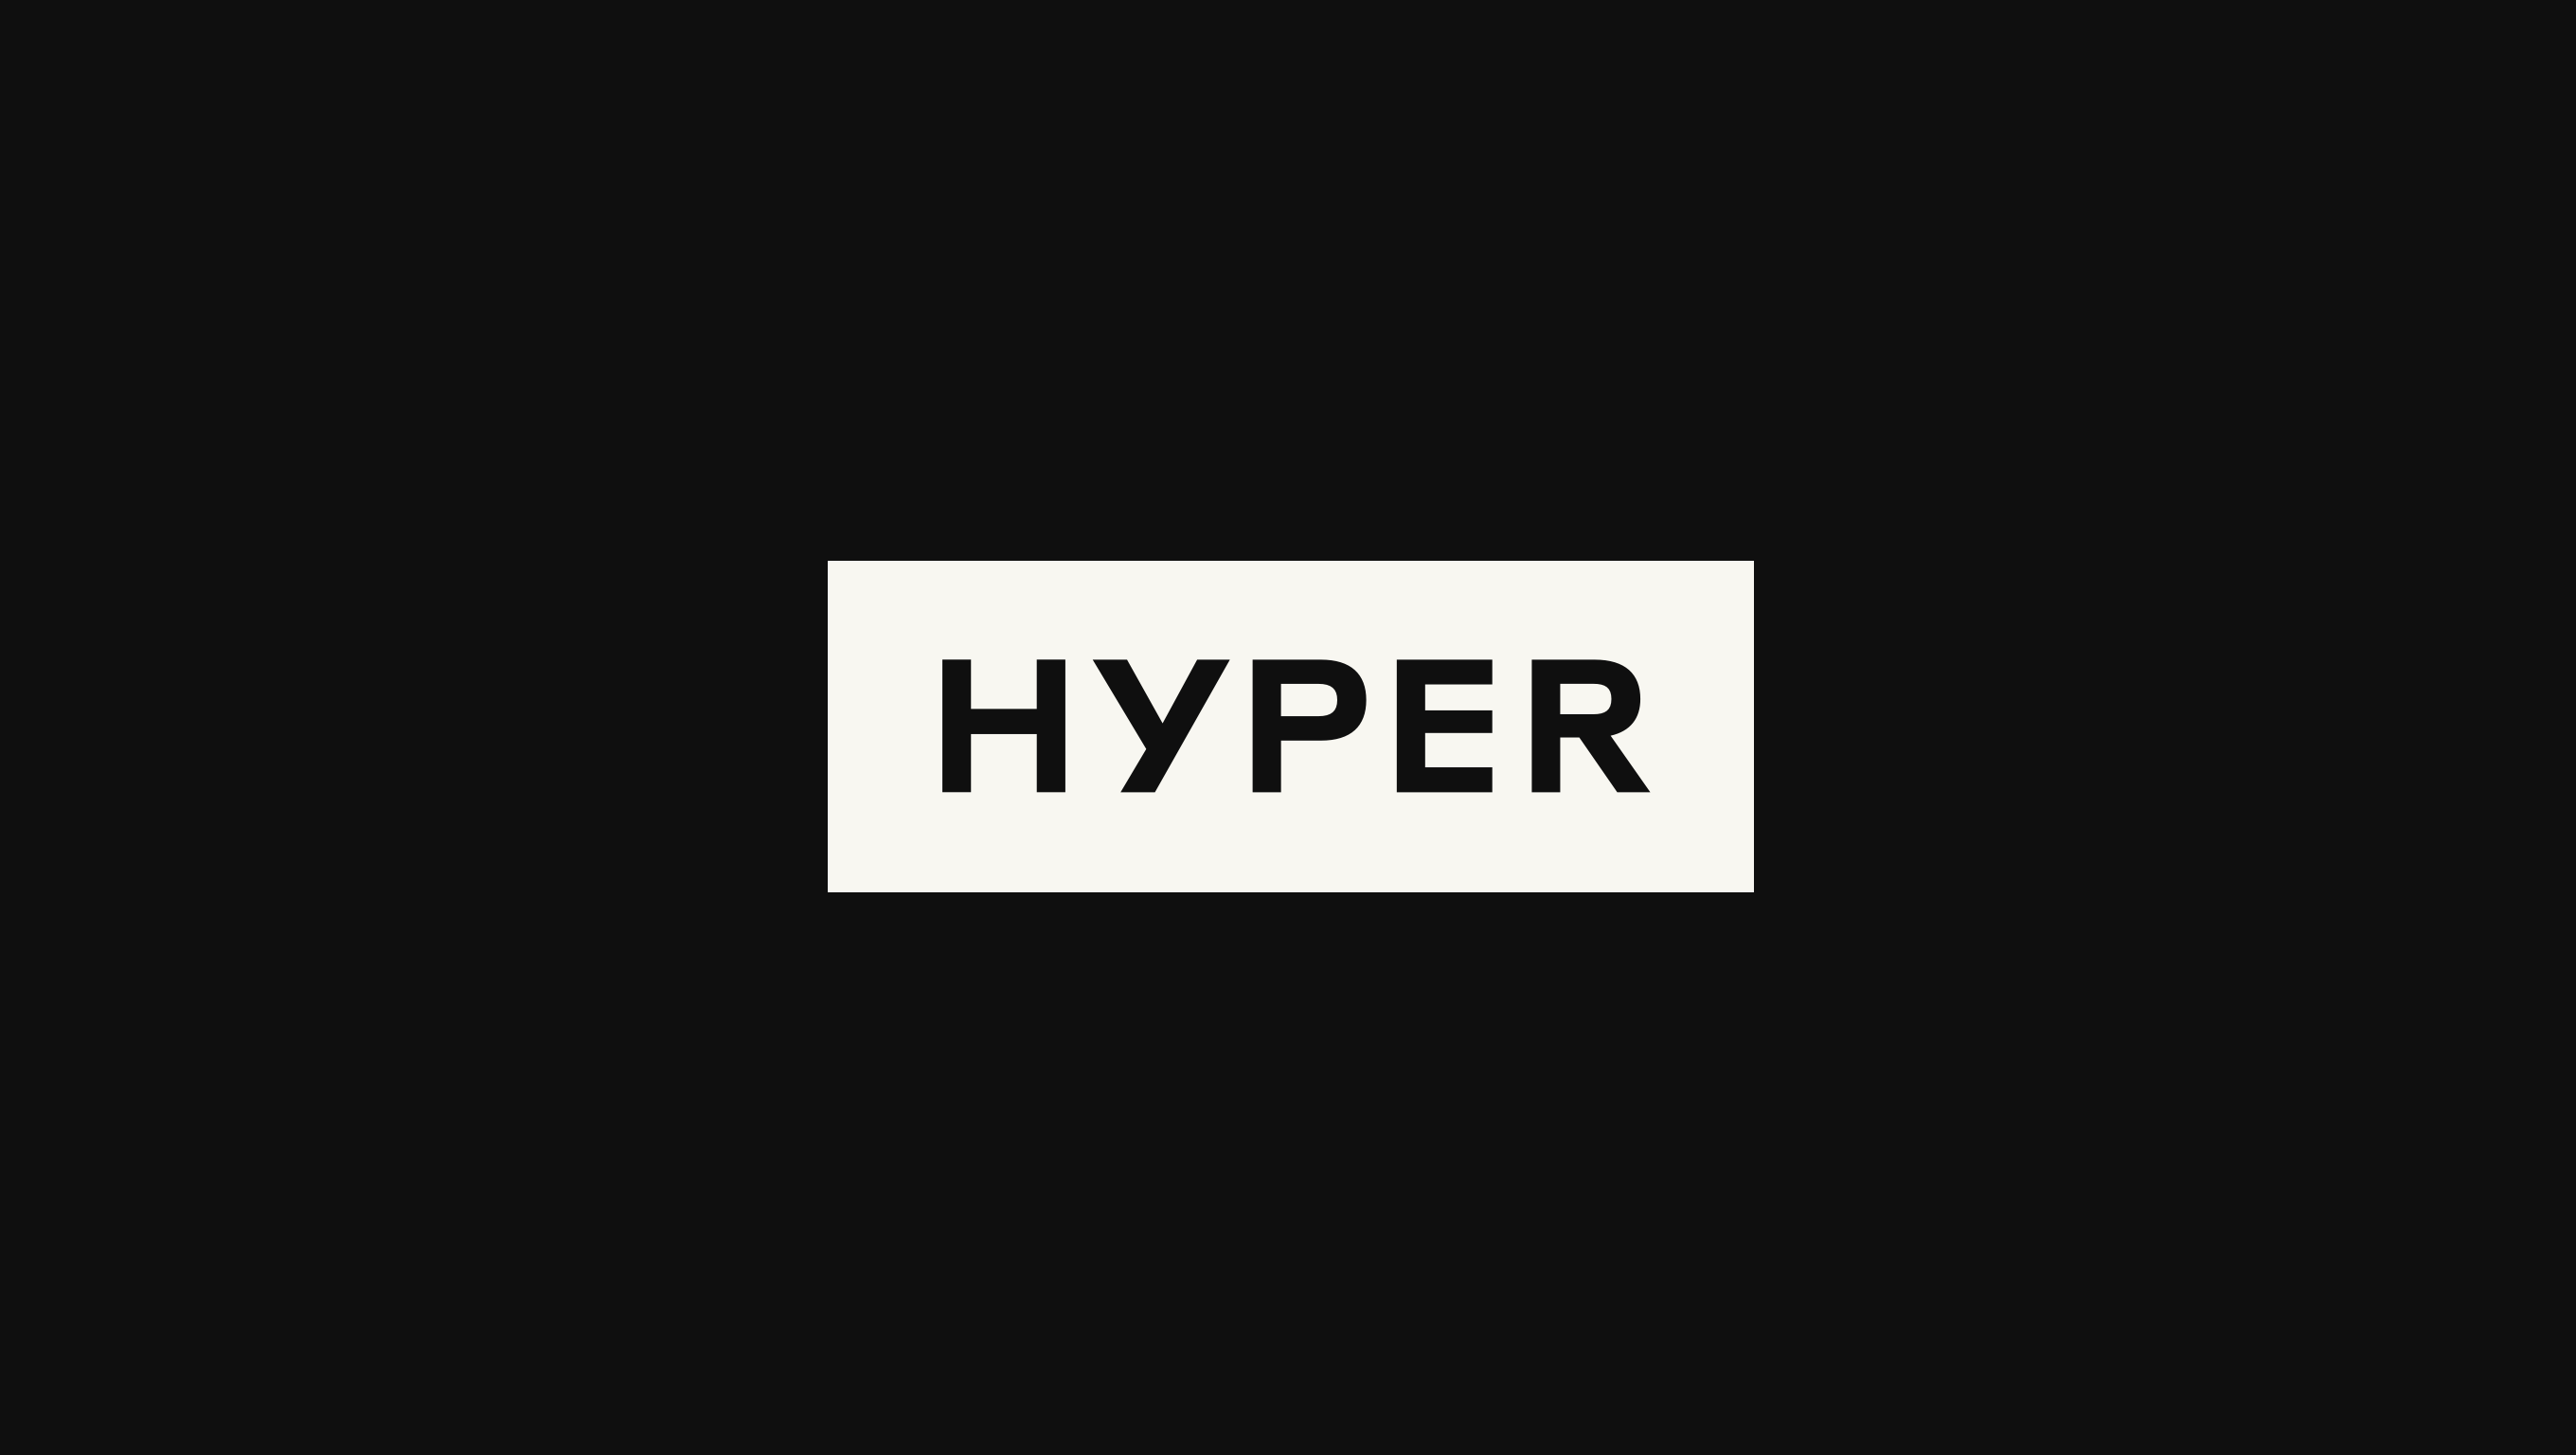 (c) Hyper.com